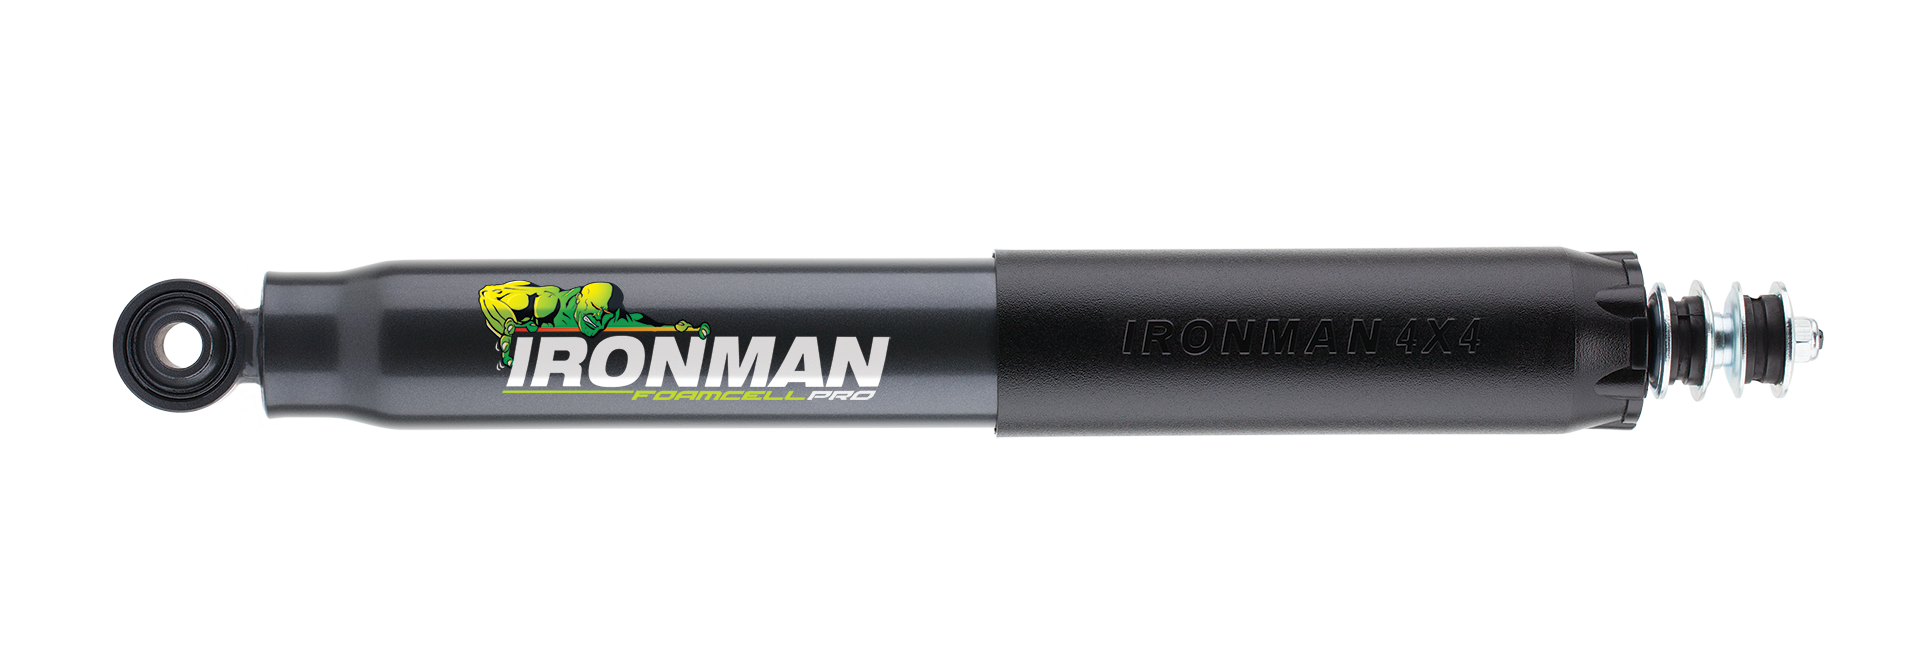 Ironman 4x4 Foam Cell Pro Shock Absorber